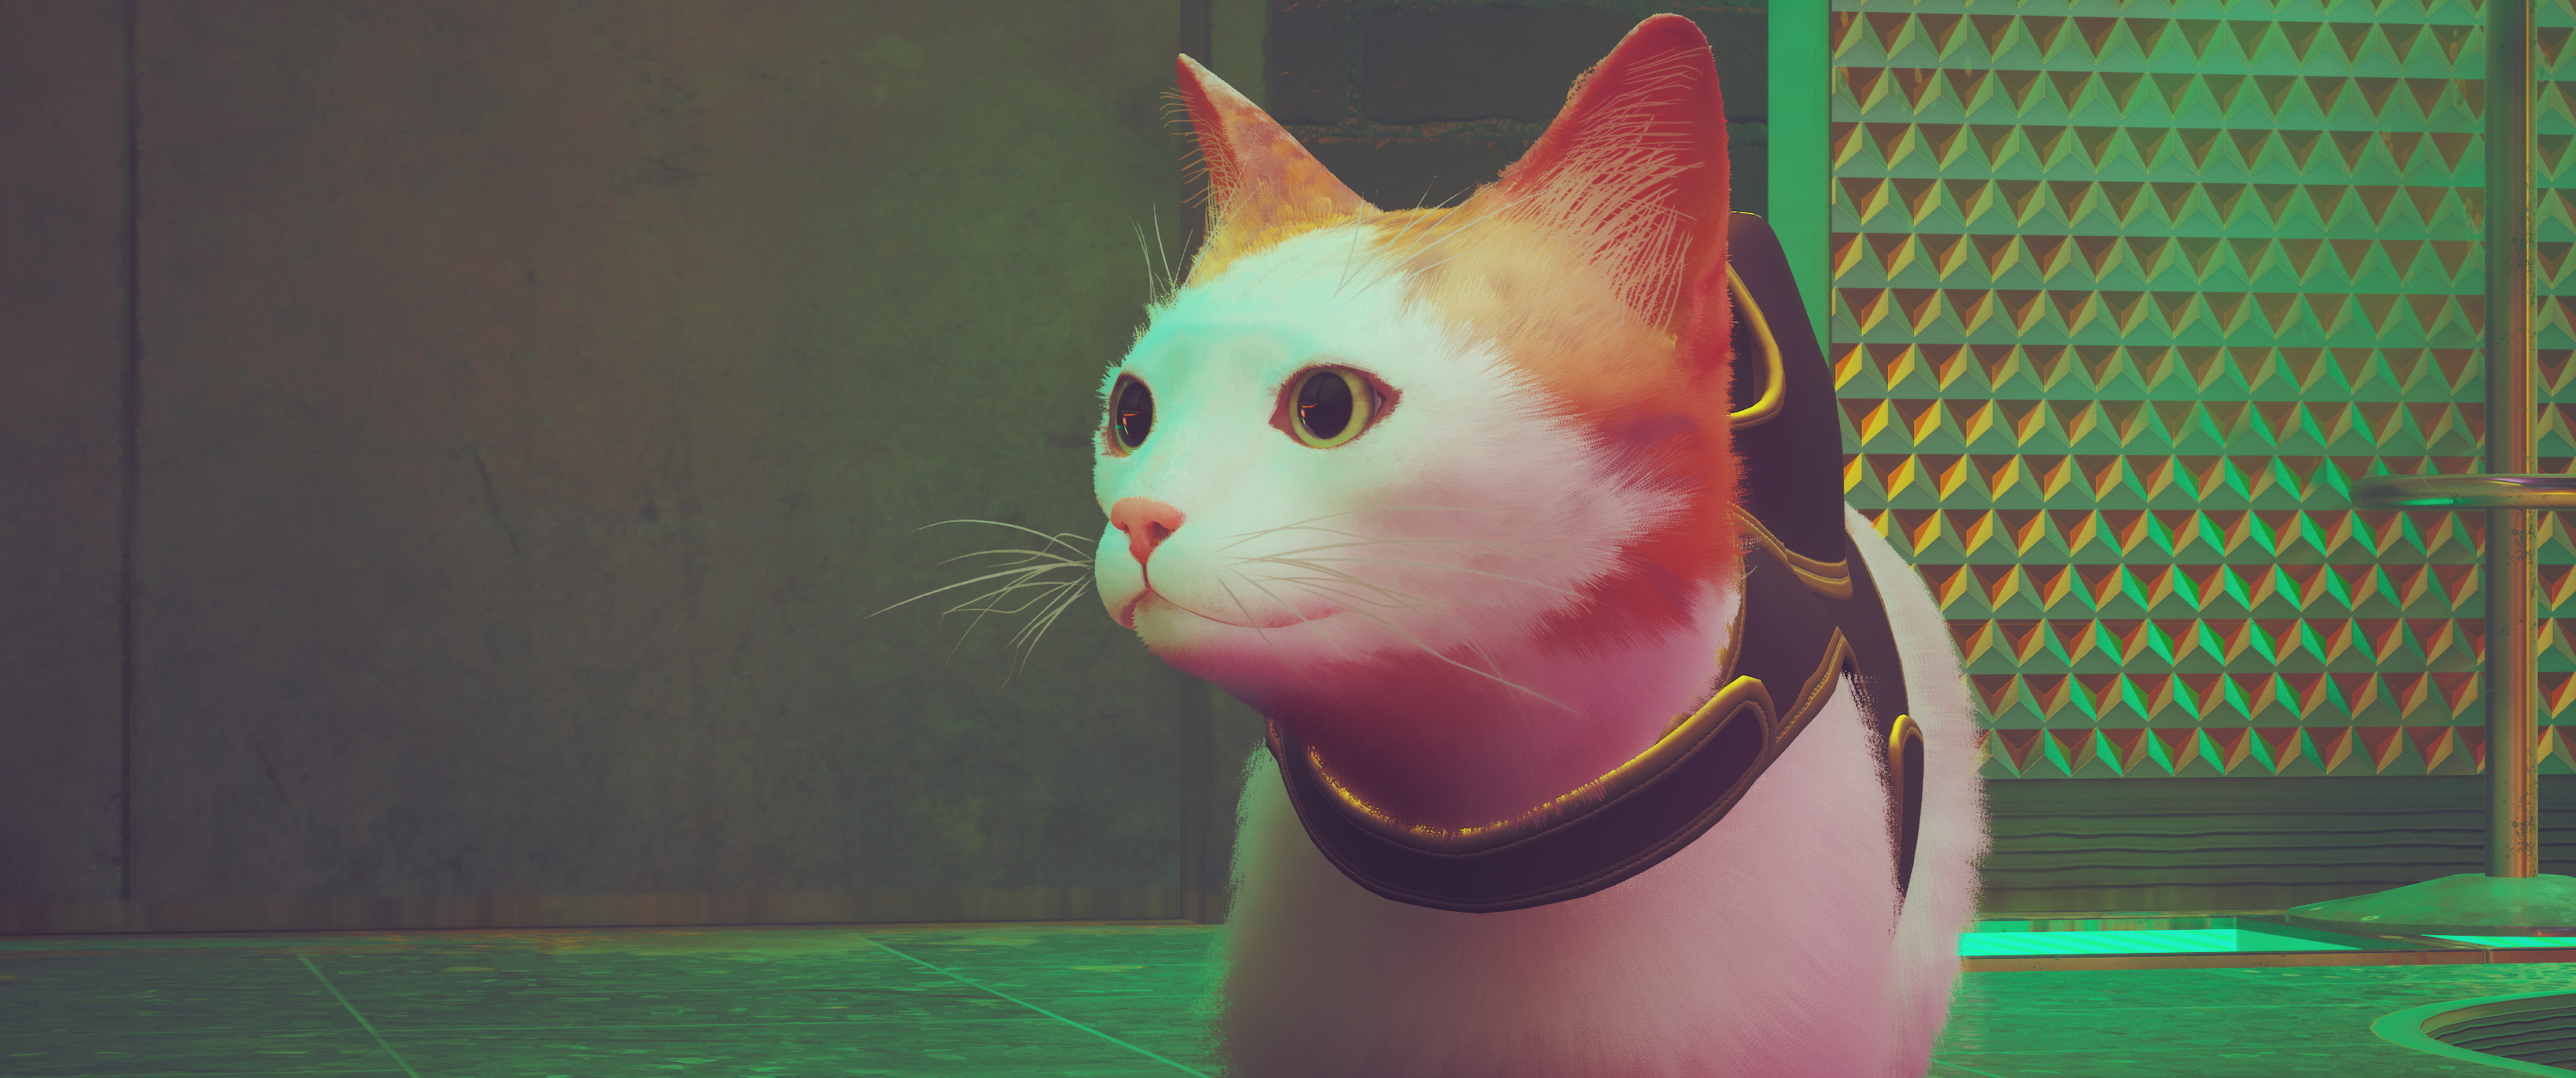 第三貓稱冒險遊戲《Stray》Mod分享各種可愛貓貓